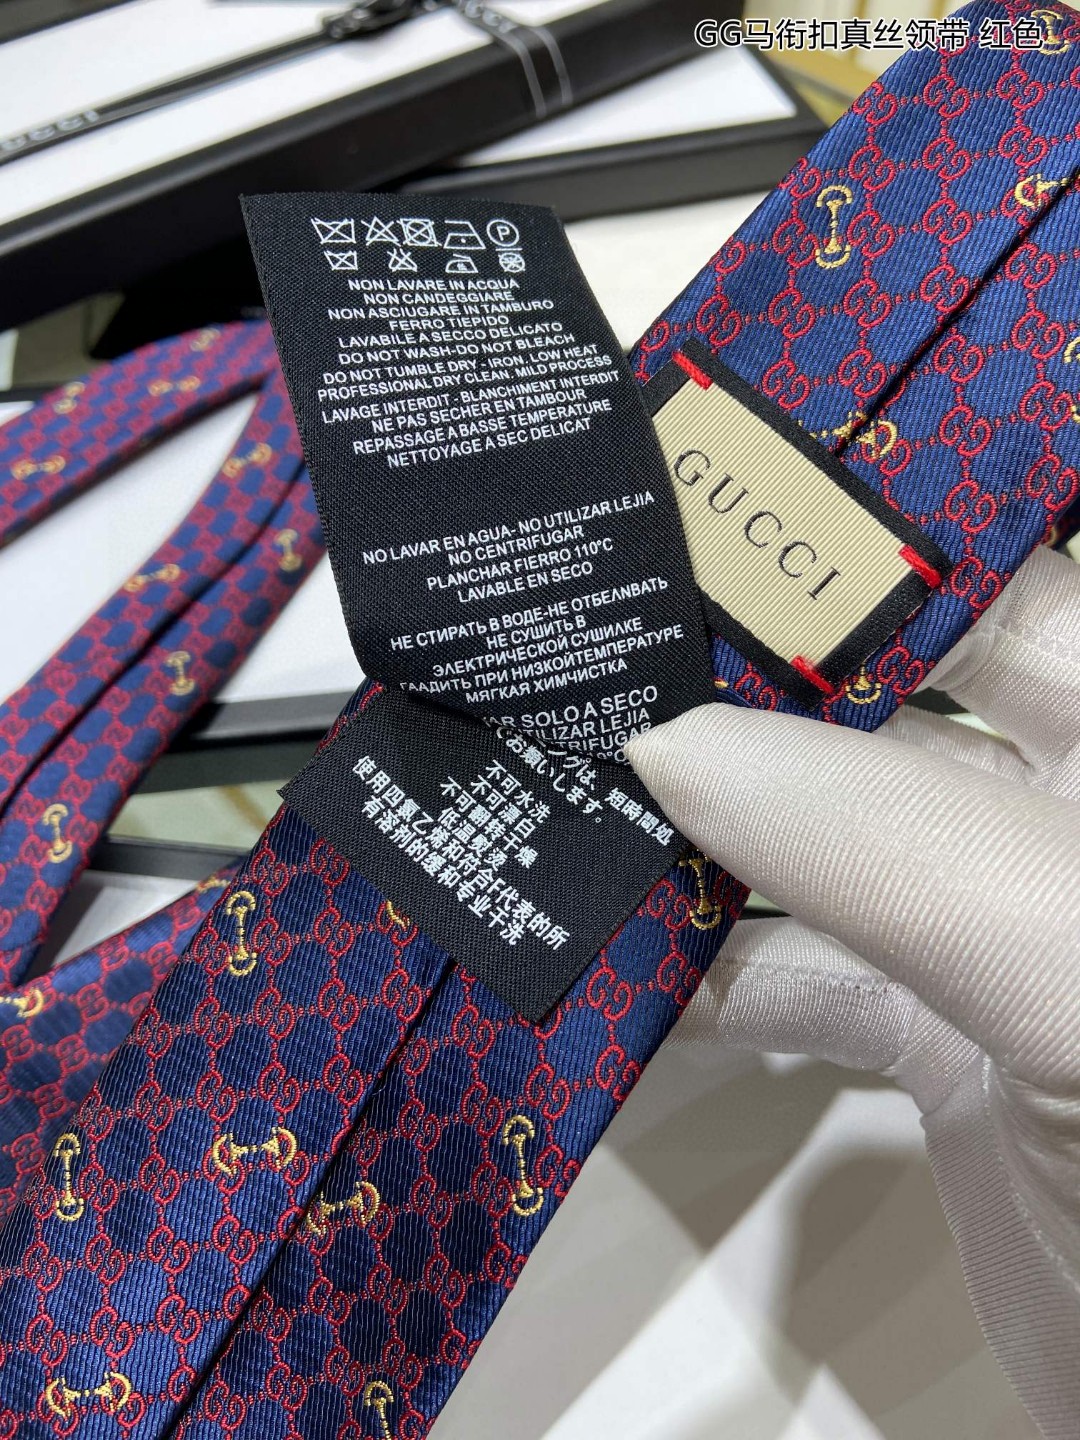 上新特价G家男士领带系列GG马衔扣真丝领带稀有展现精湛手工与时尚优雅的理想选择这款领带将标志性的主题动物